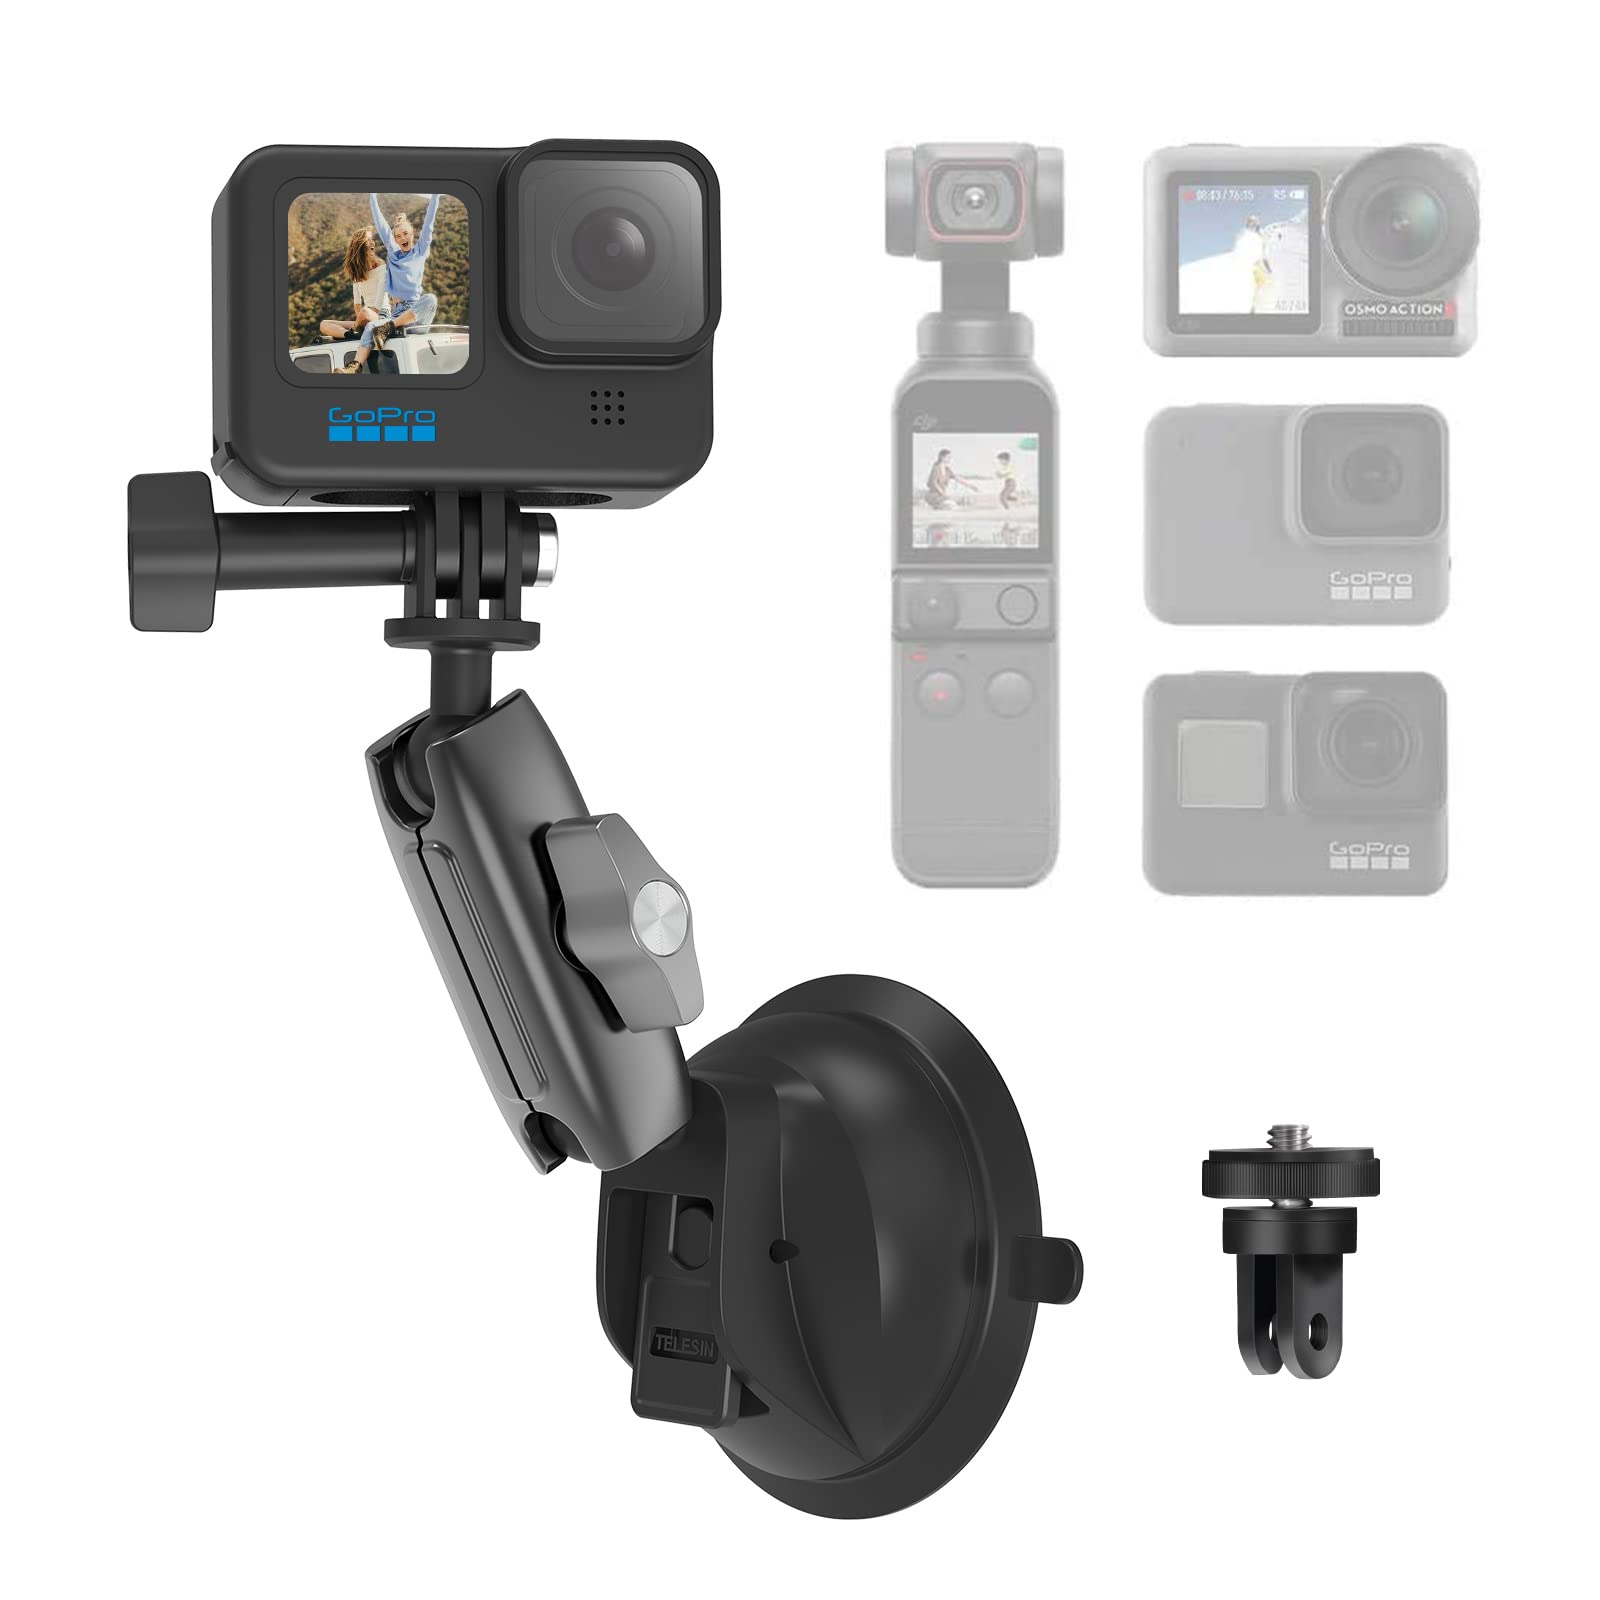 AuyKoo Saugnapfhalterung für GoPro 11/10/9/8/7/6/5 und Action-Kameras, Saugnapfhalterung Klapphalterung für Auto, Boot, Yacht, Motorrad für Videoaufnahmen